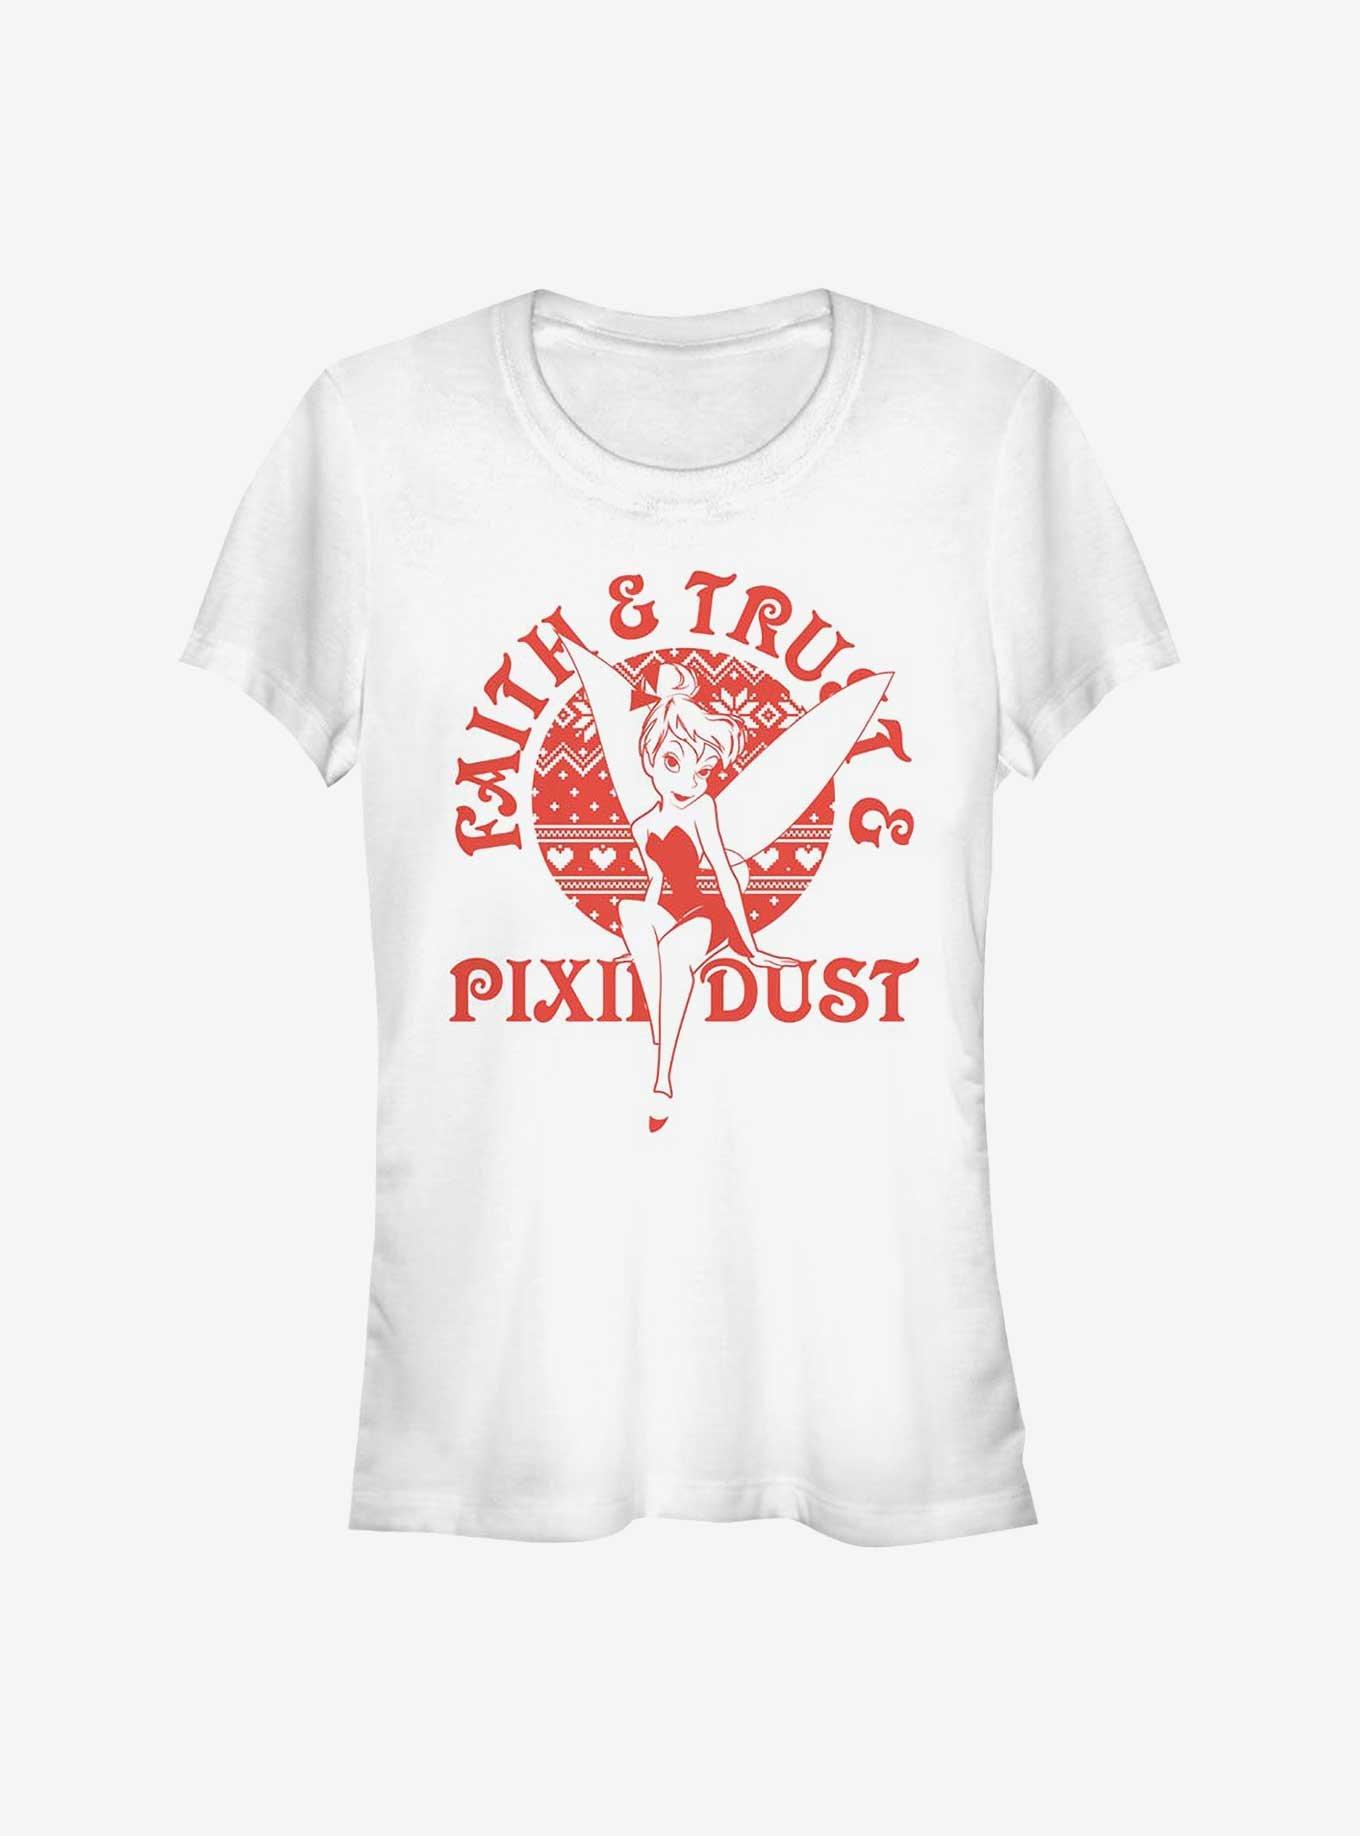 Disney Tinker Bell Faith Trust Pixie Dust Girls T-Shirt, WHITE, hi-res